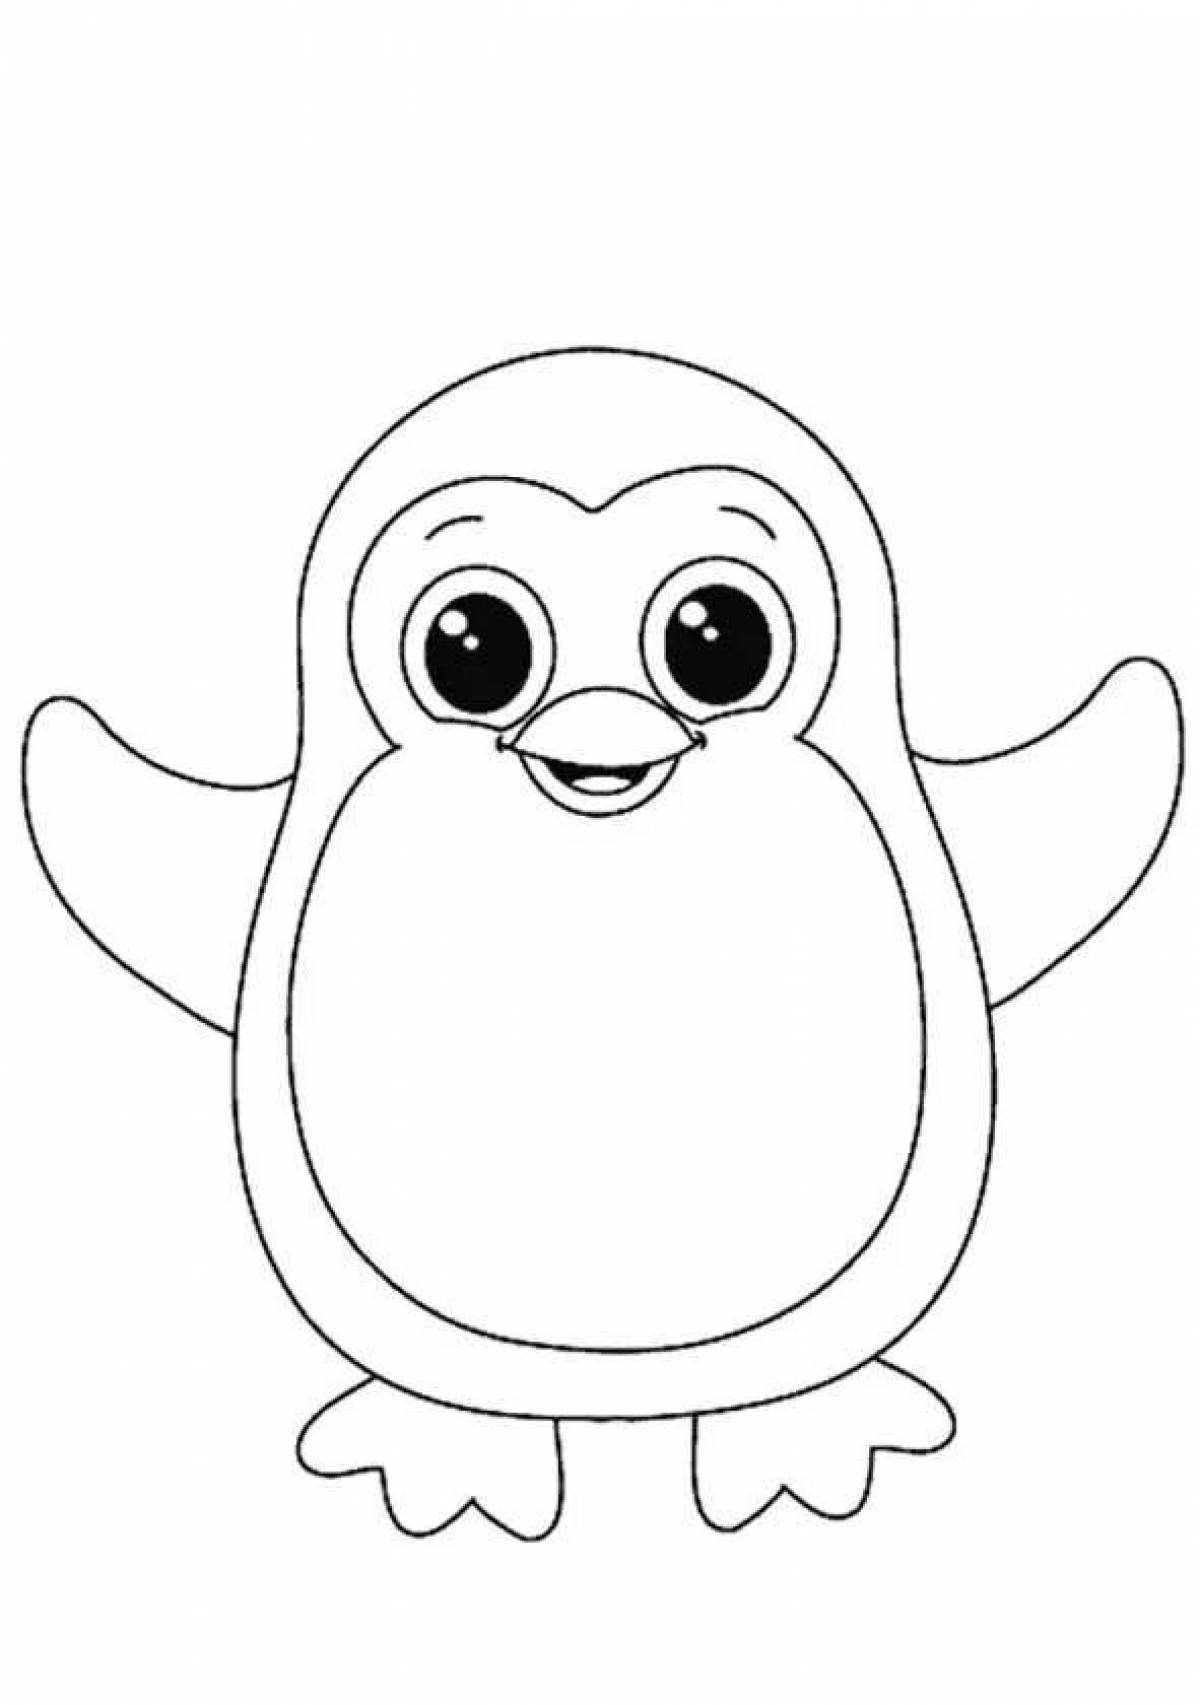 Пингвиненок раскраска для детей